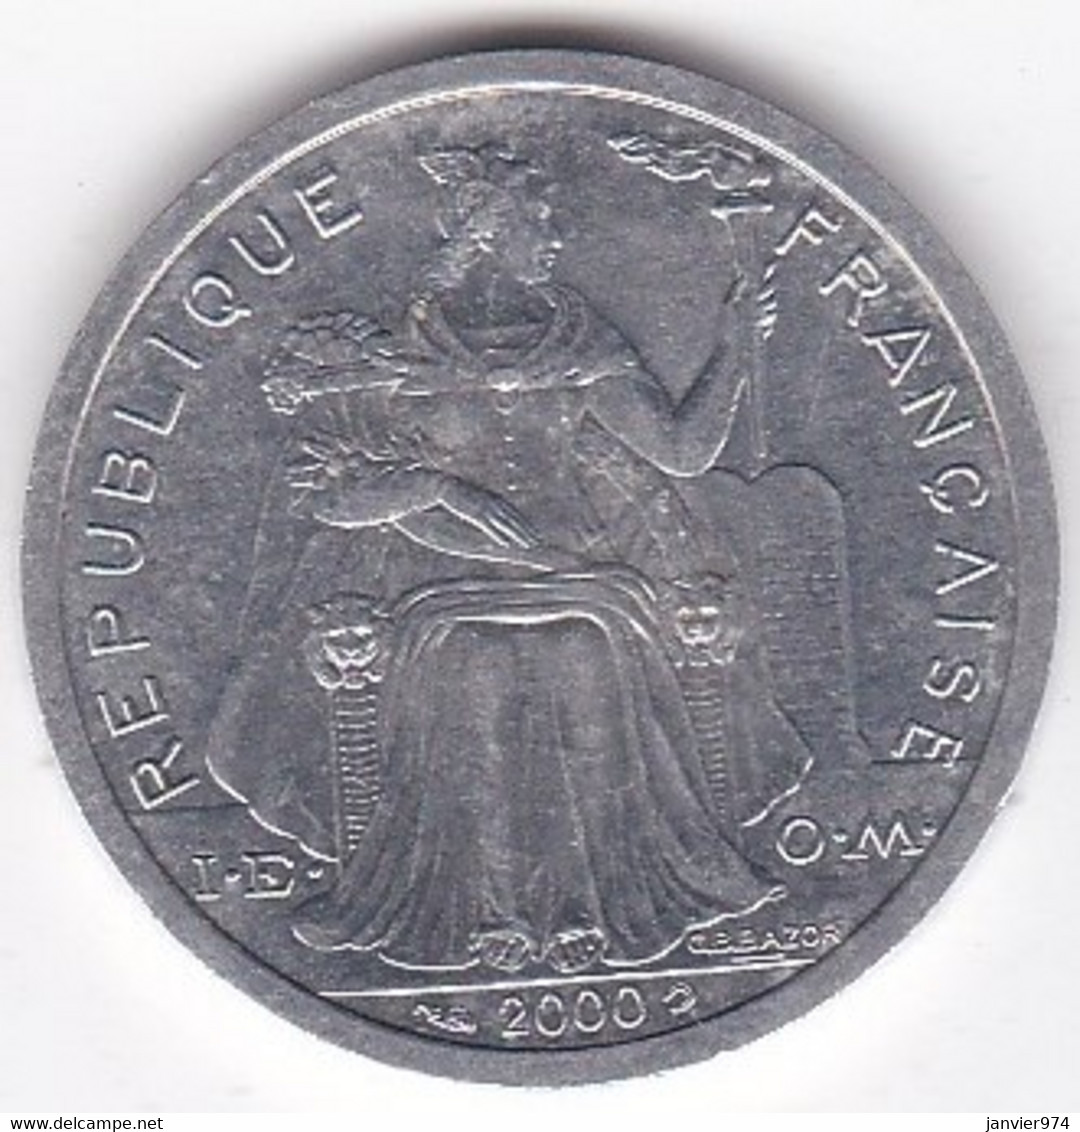 Polynésie Française . 2 Francs 2000, En Aluminium - French Polynesia